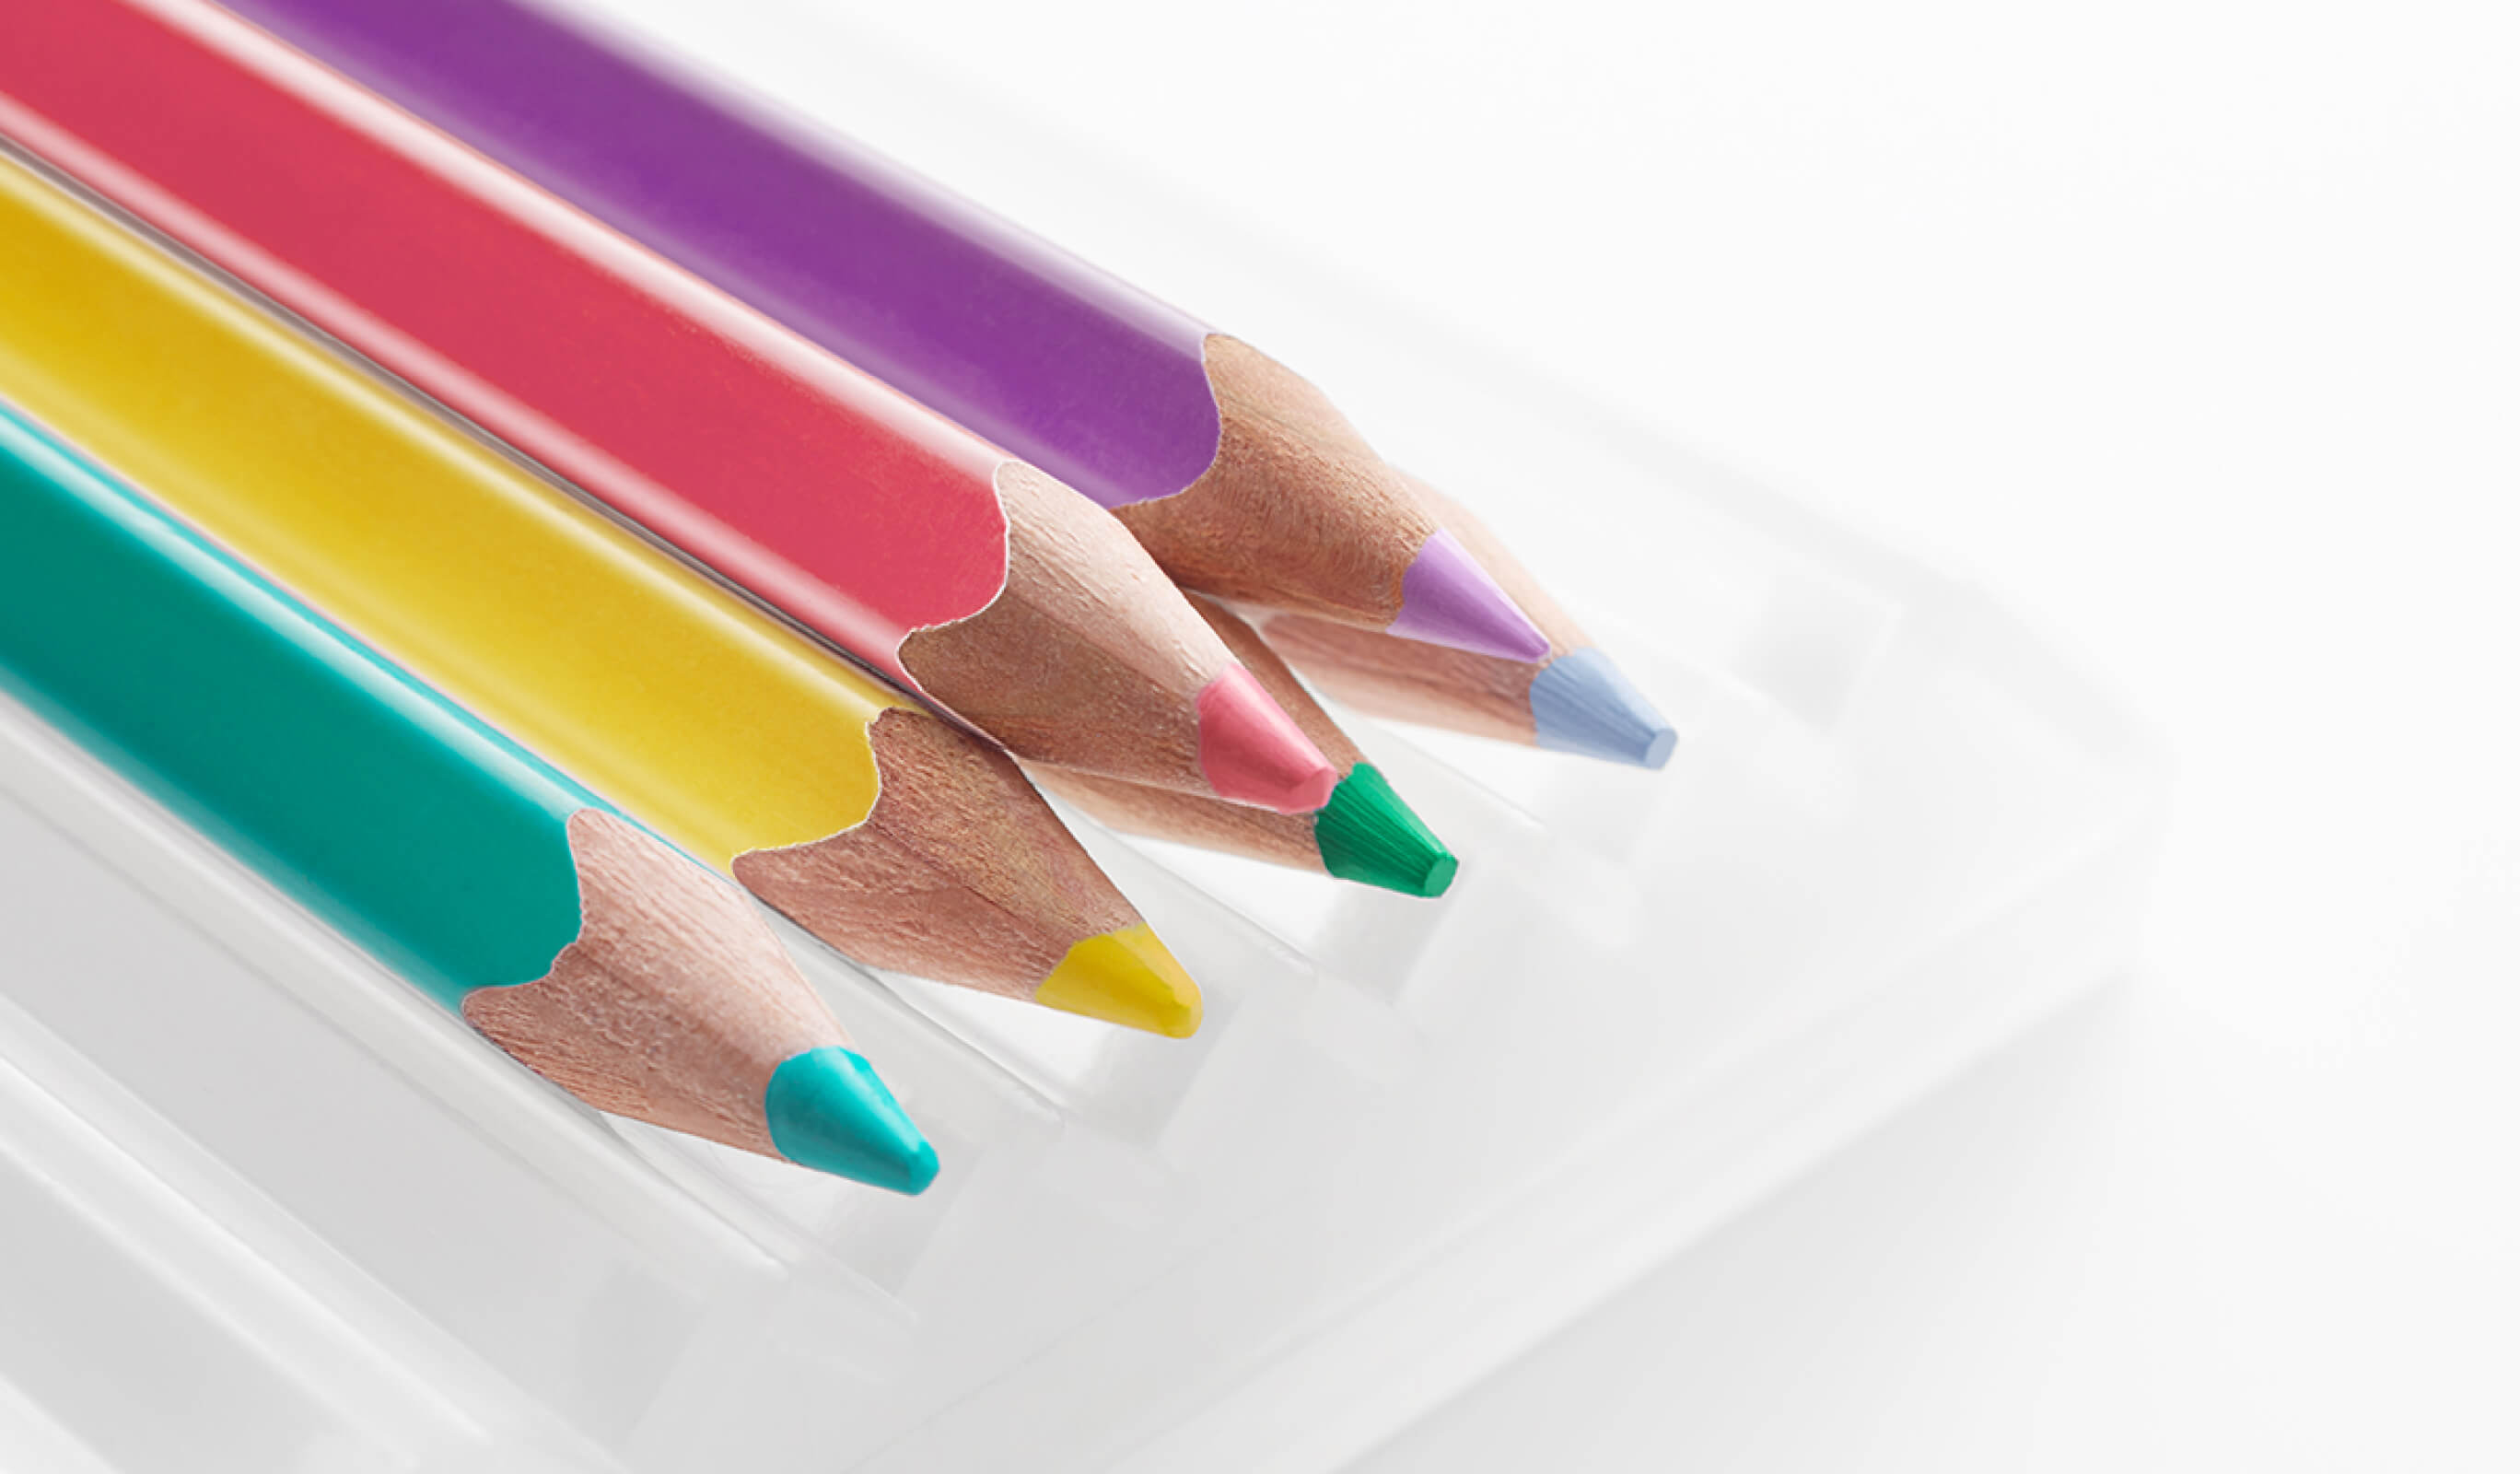 500 Colored Pencils | SHIFTBRAIN inc.